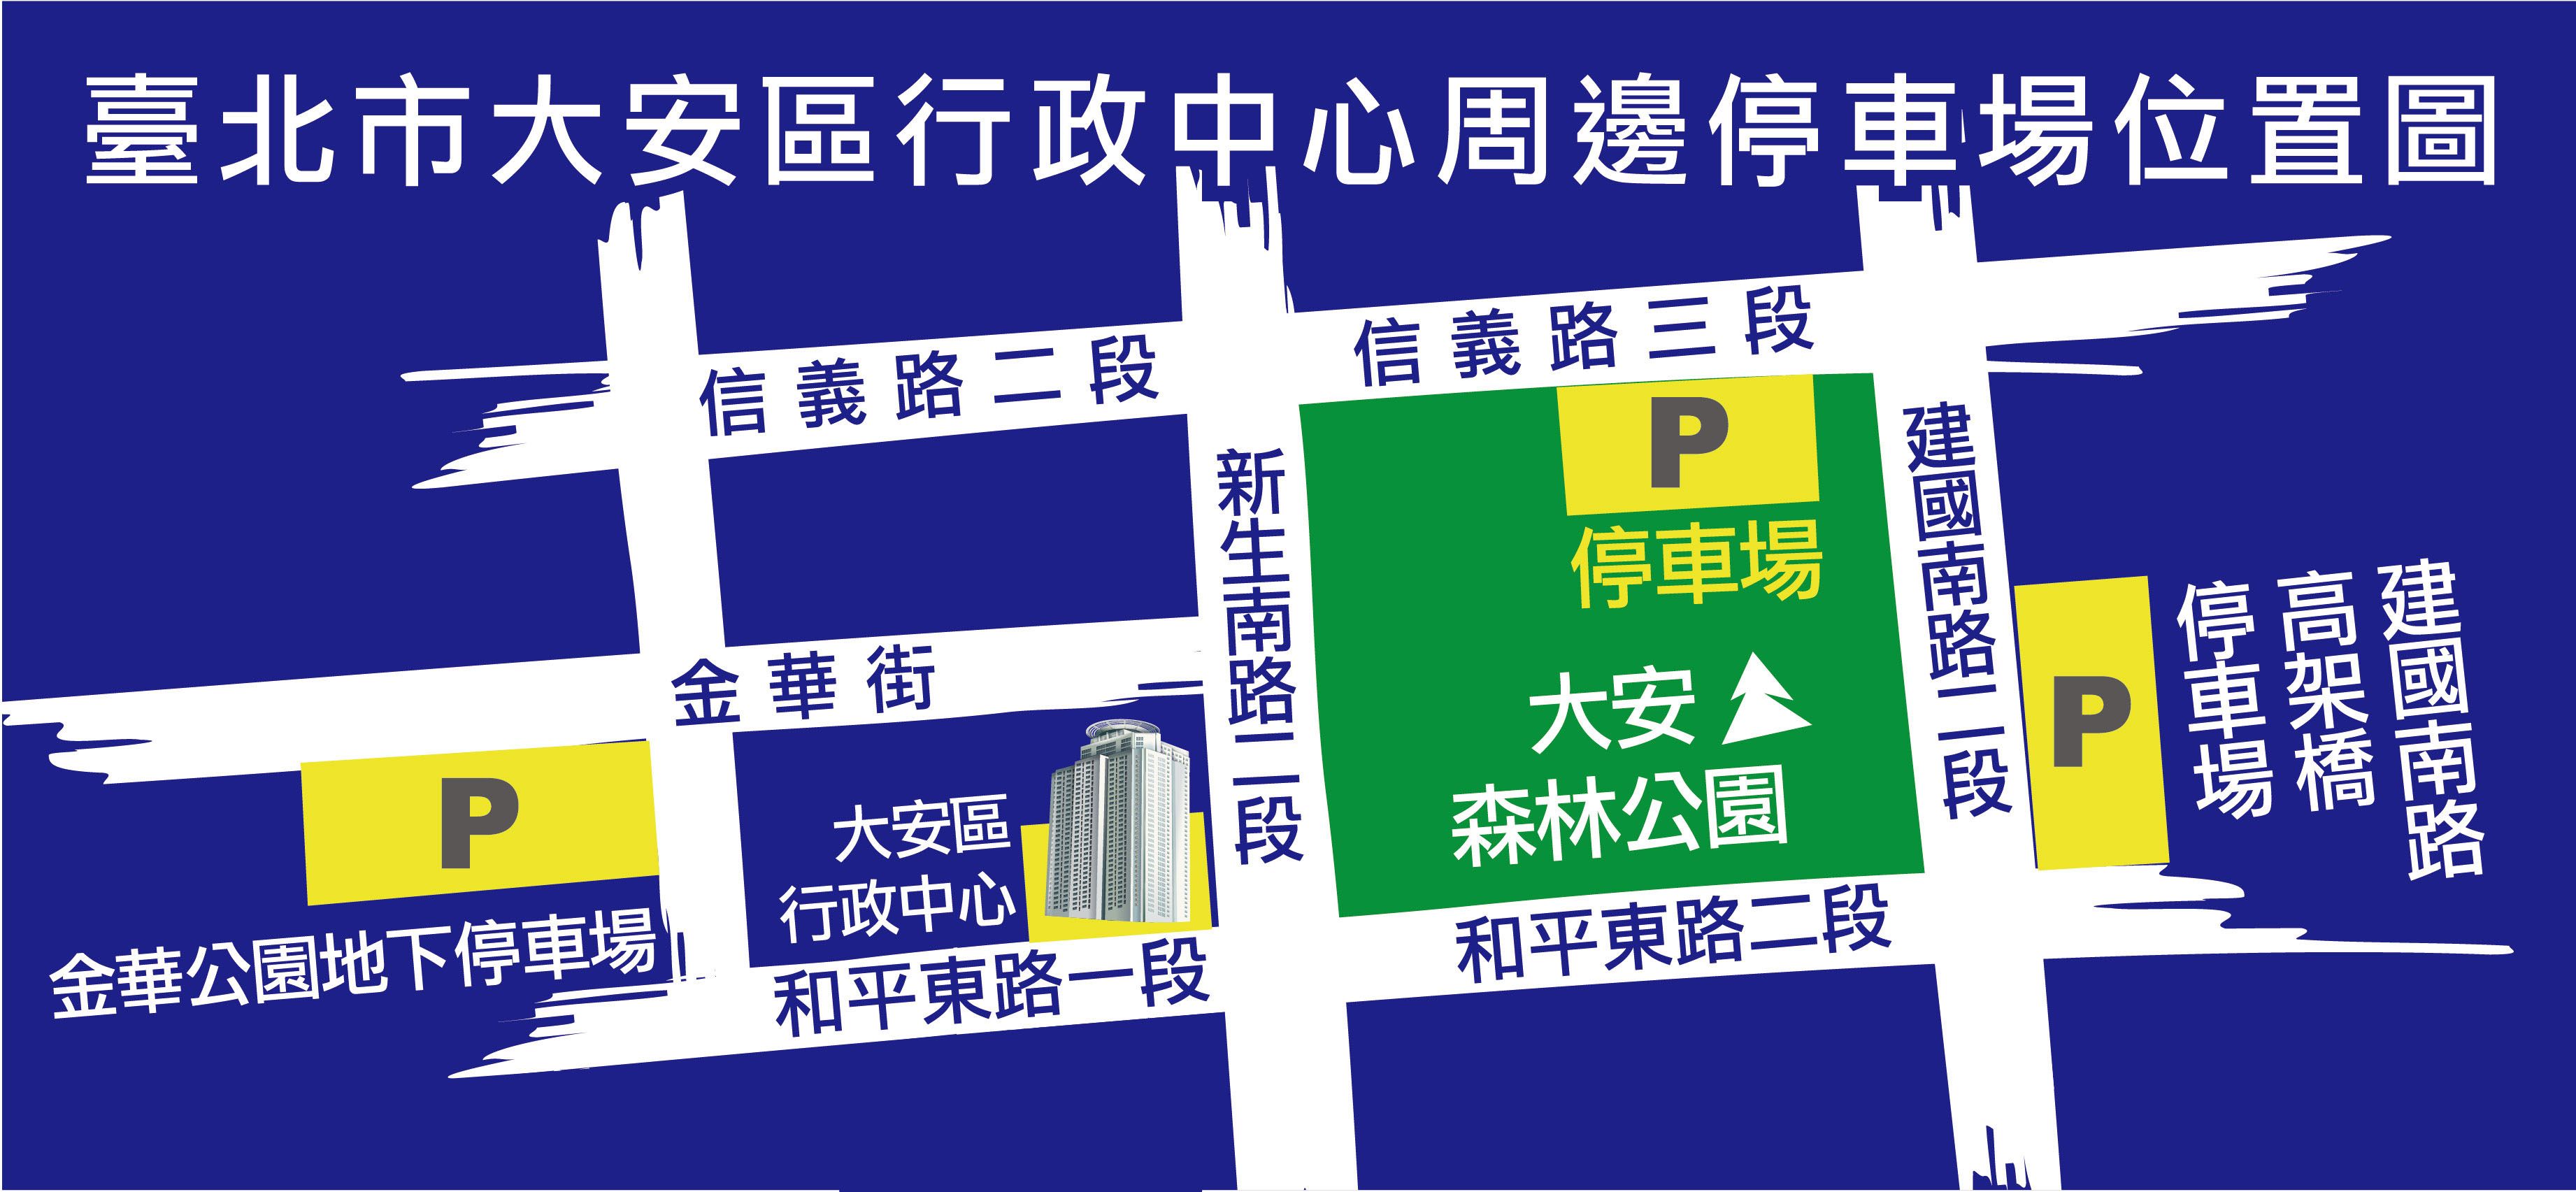 臺北市大安區行政中心周邊停車場位置圖